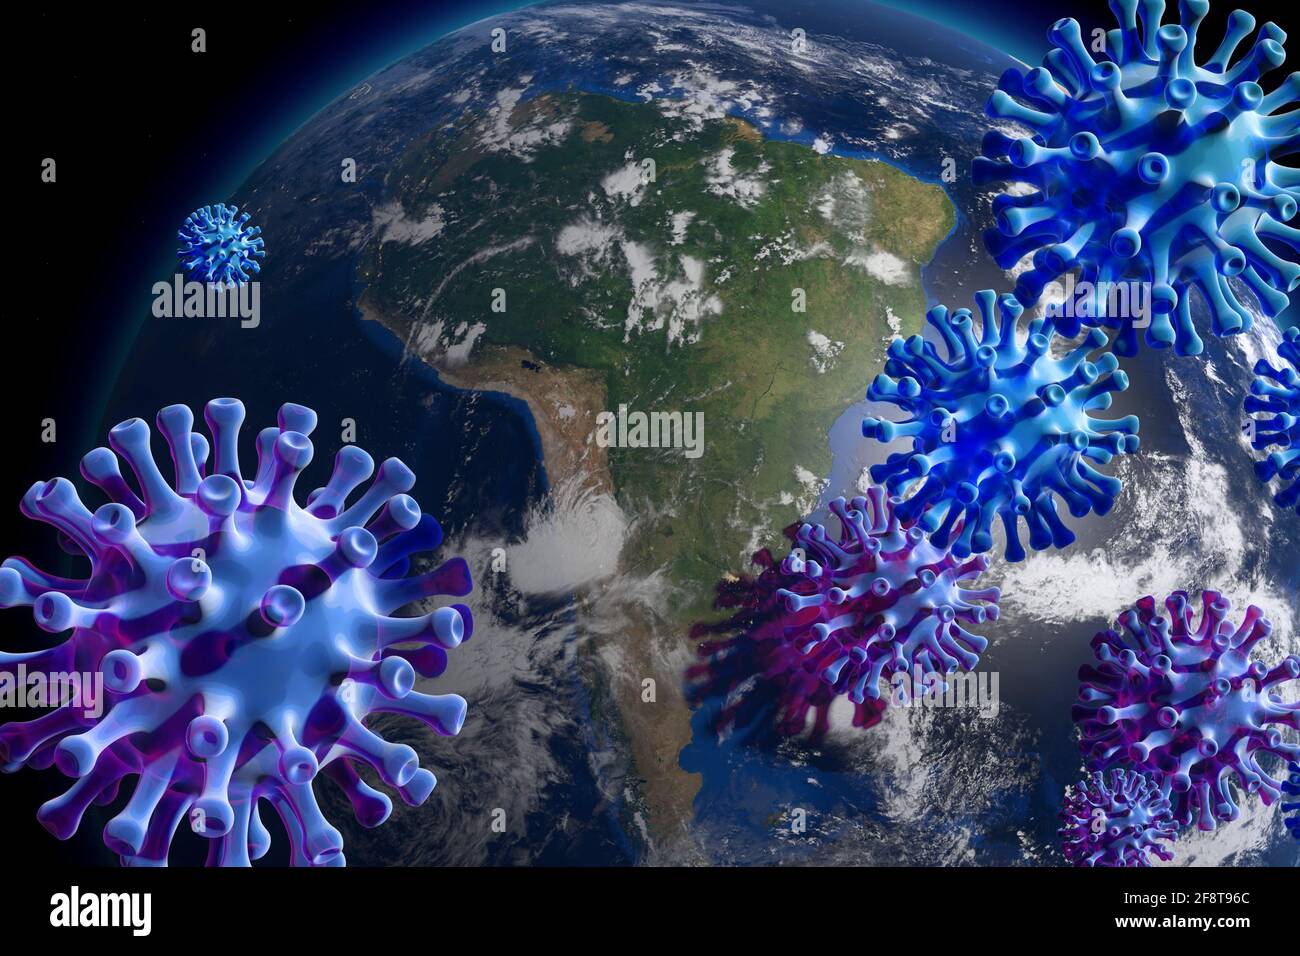 ein fieses Virus befaellt die Welt - Symbolbild: CGI-Visualisierung: Coronavirus Covid 19, SARS 2, Erdball im Weltall: Suedamerika/ a horrible new vir Stock Photo